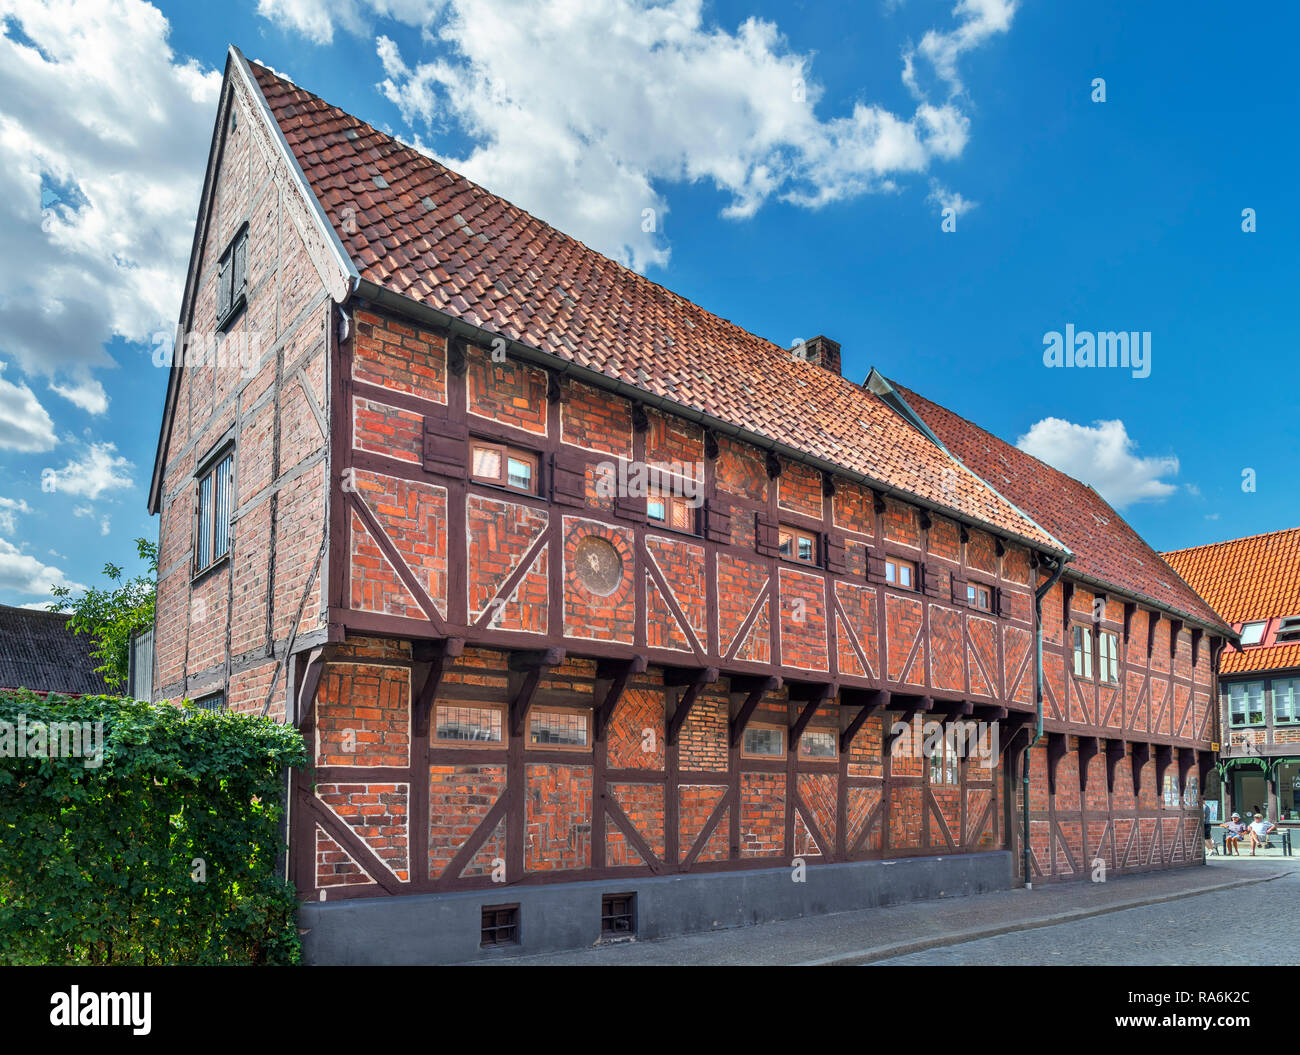 Pilgrändshuset, ein Fachwerkhaus von 1470 und das älteste dieser Gebäude in Skandinavien, Ystad, Schweden Stockfoto